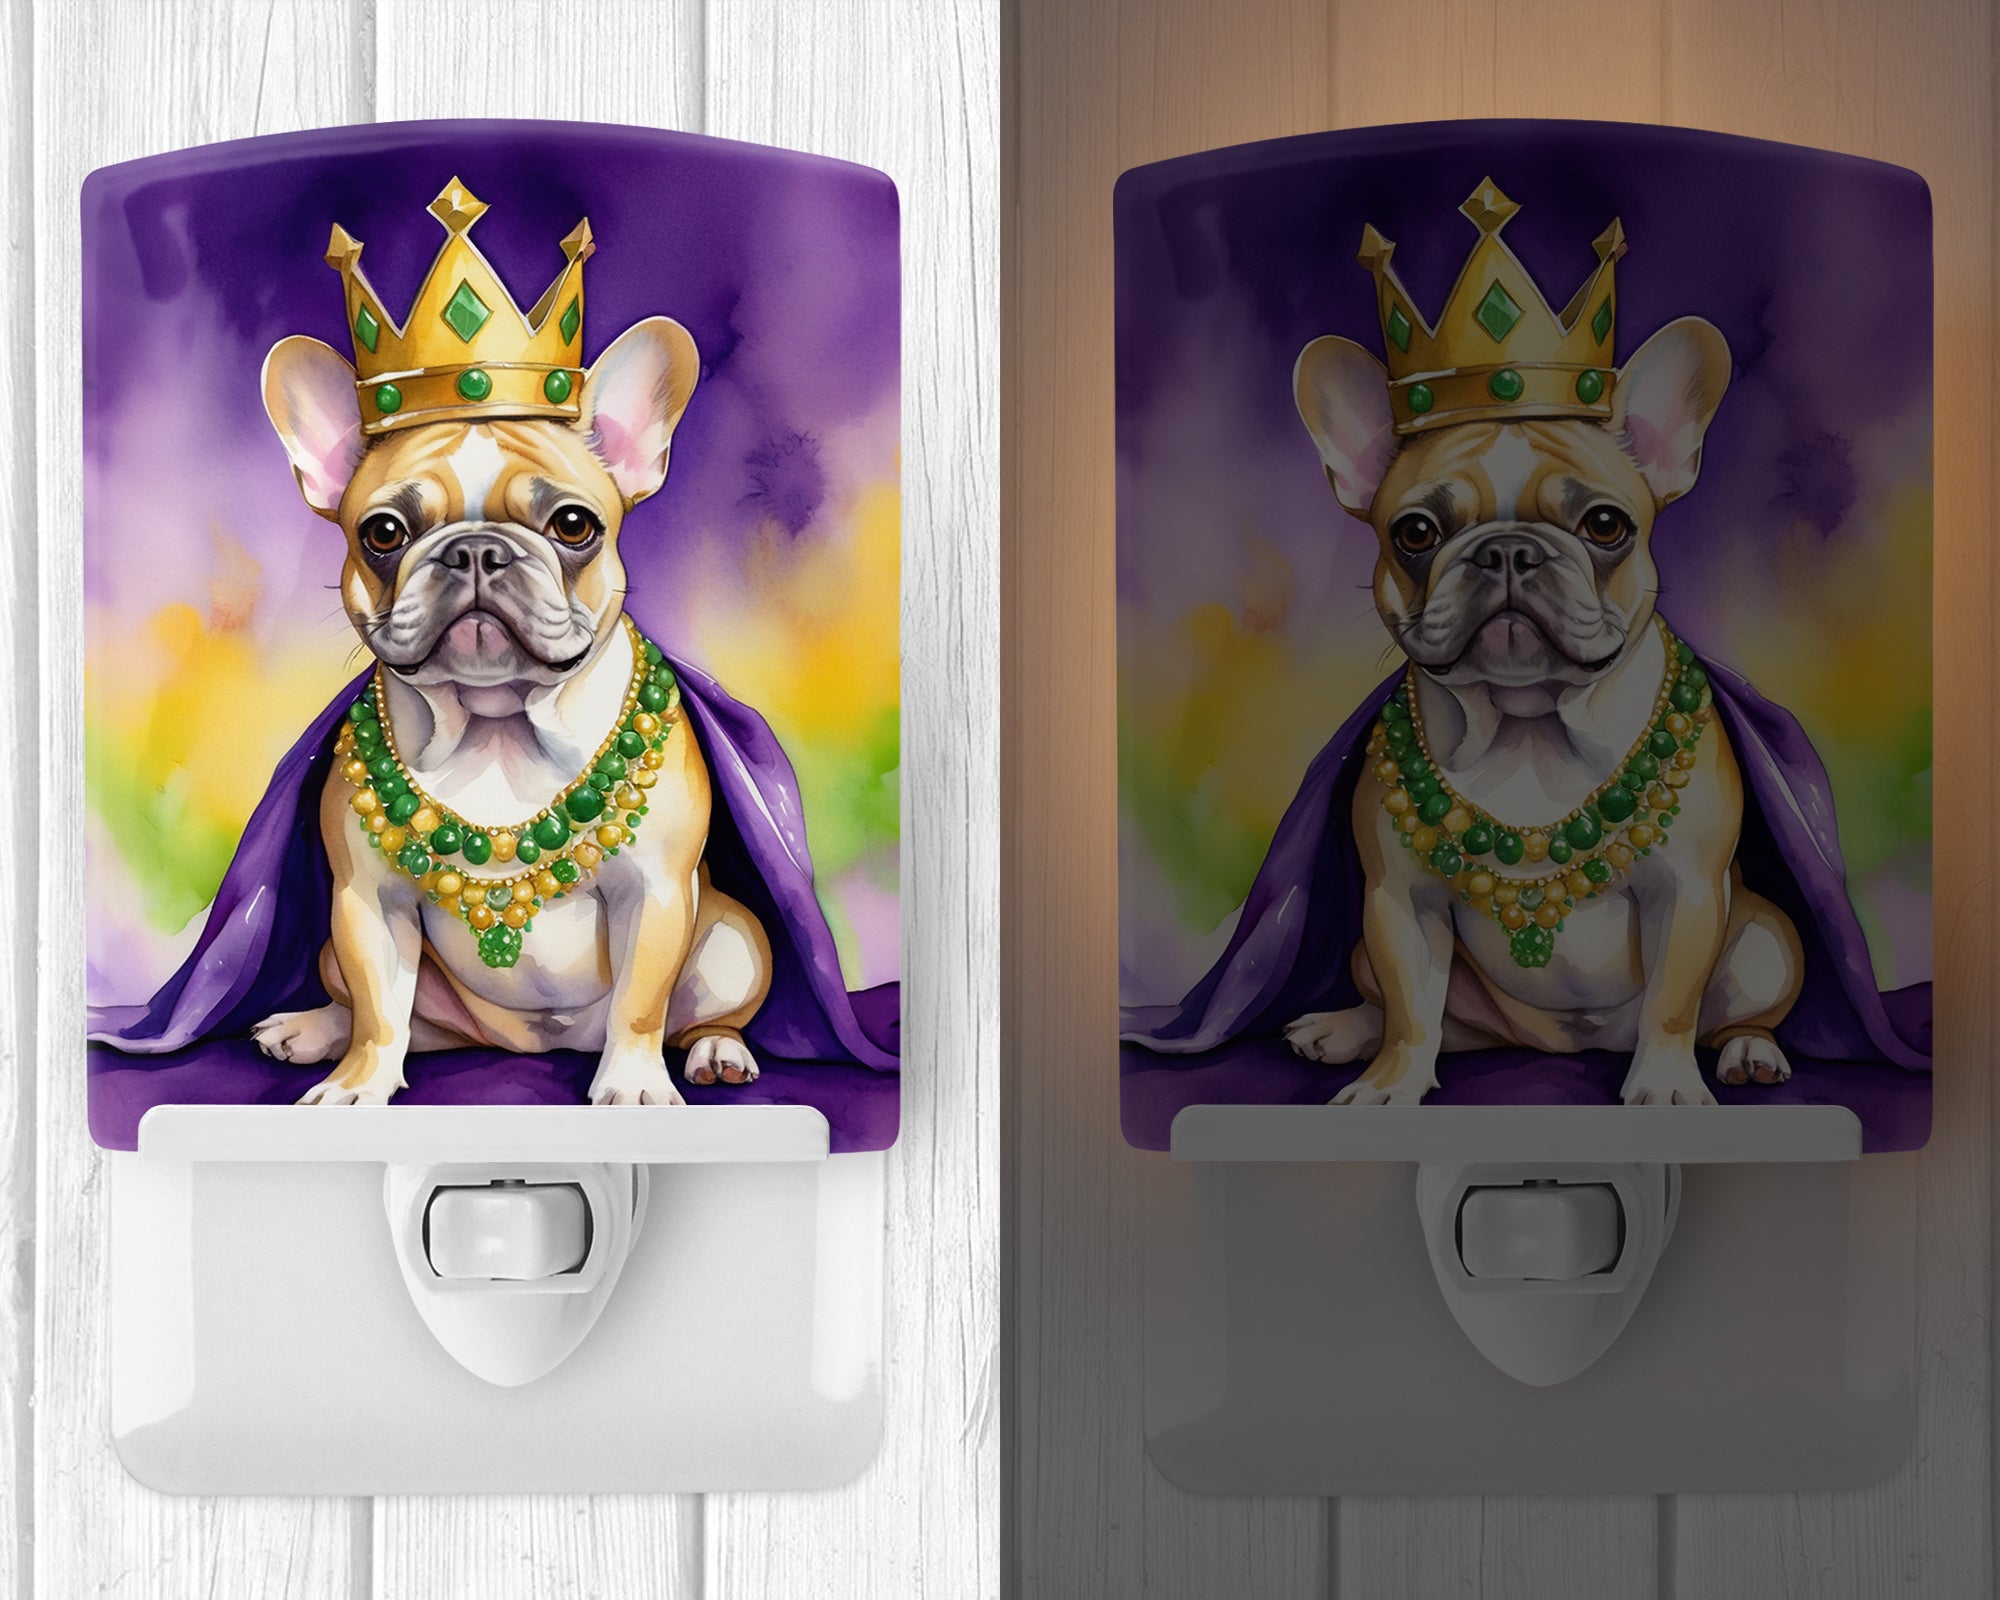 Buy this French Bulldog King of Mardi Gras Ceramic Night Light